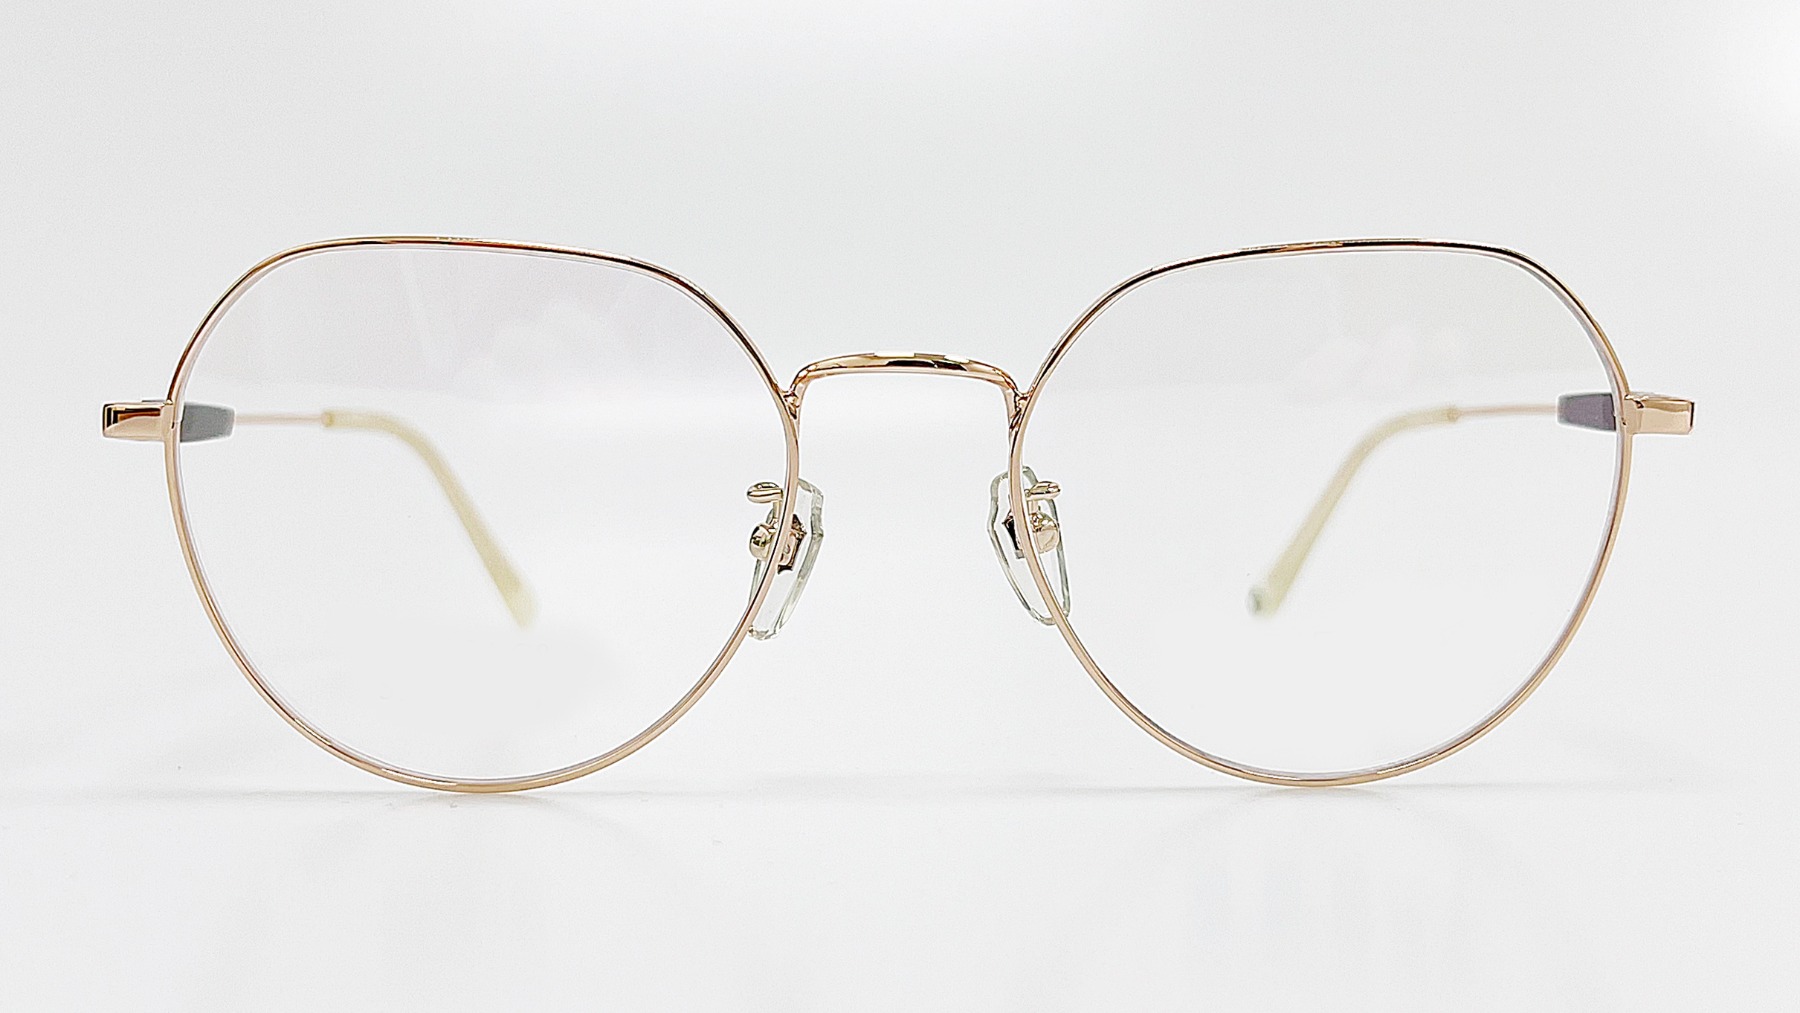 HORIEN_HN8094, Korean glasses, sunglasses, eyeglasses, glasses